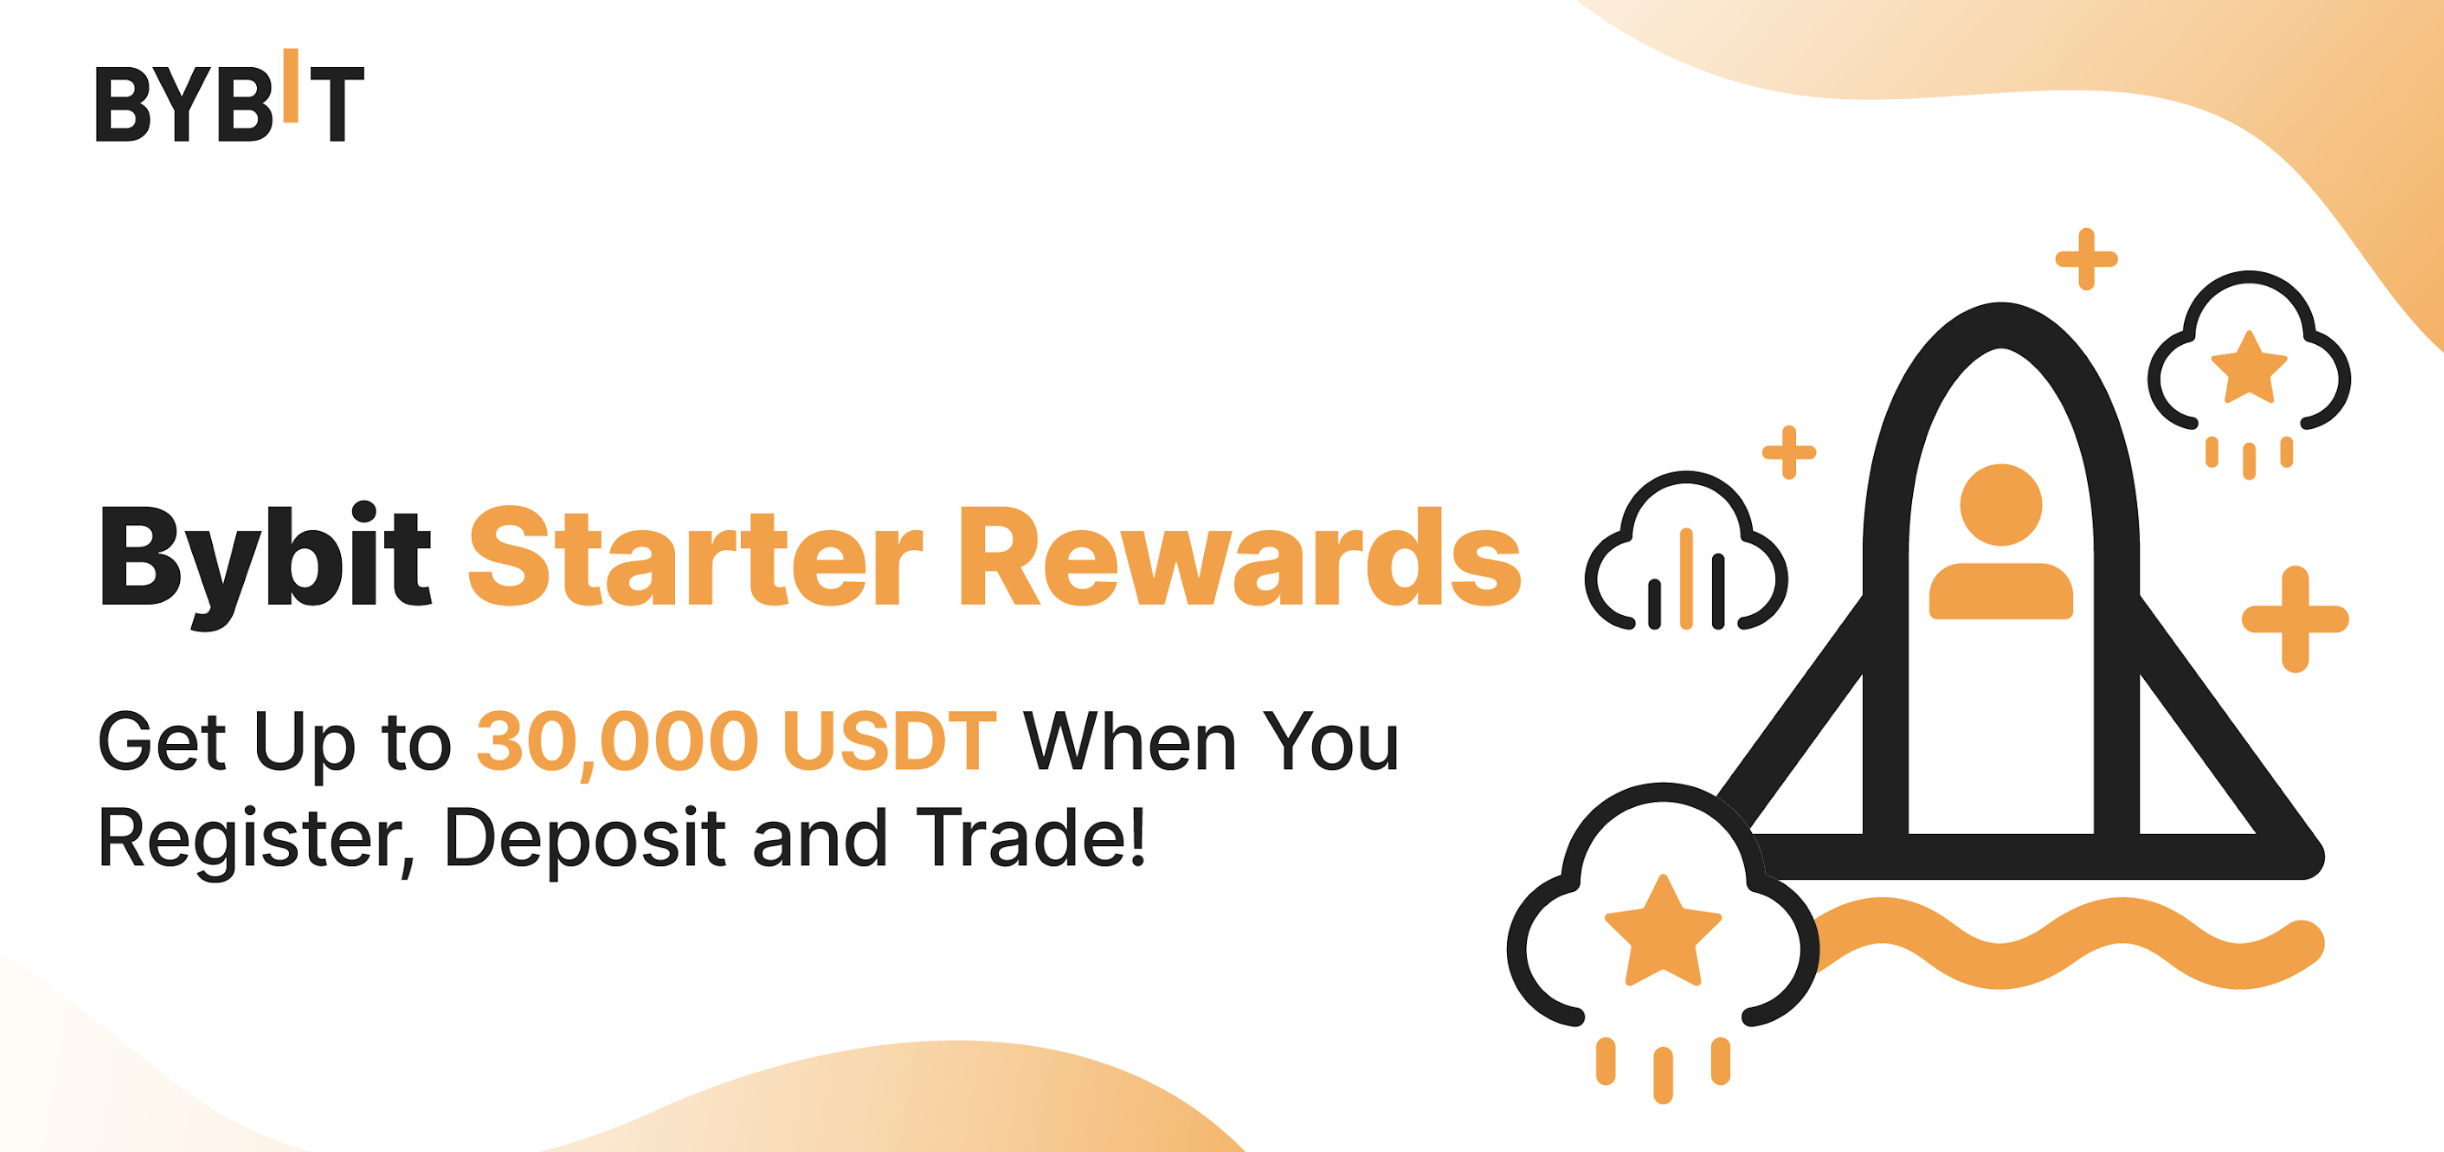 $30,000 USDT Bybit Starter Rewards